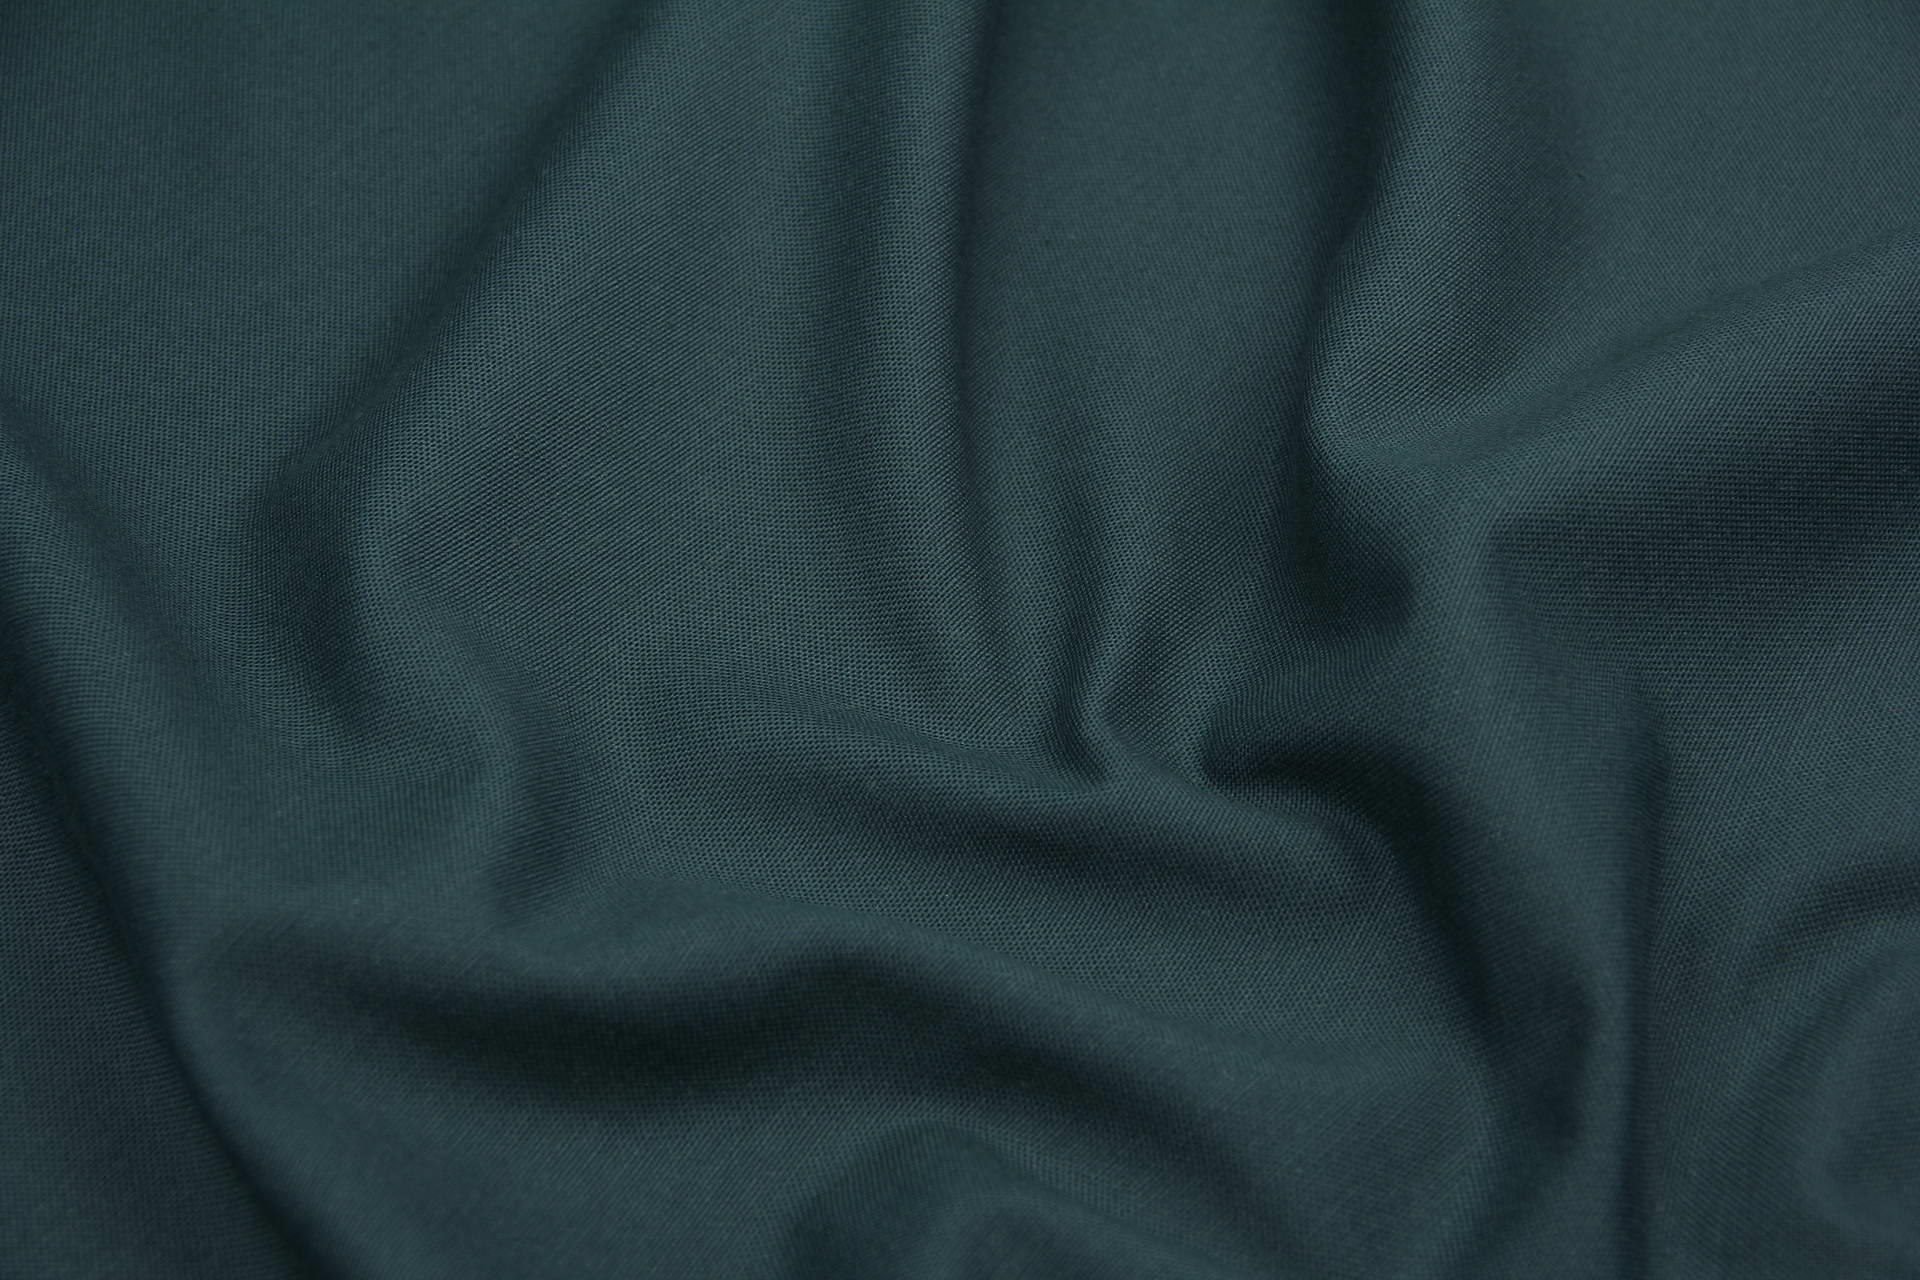 Ткань скатертная с тефлоновой пропиткой Зеленый мох N0505